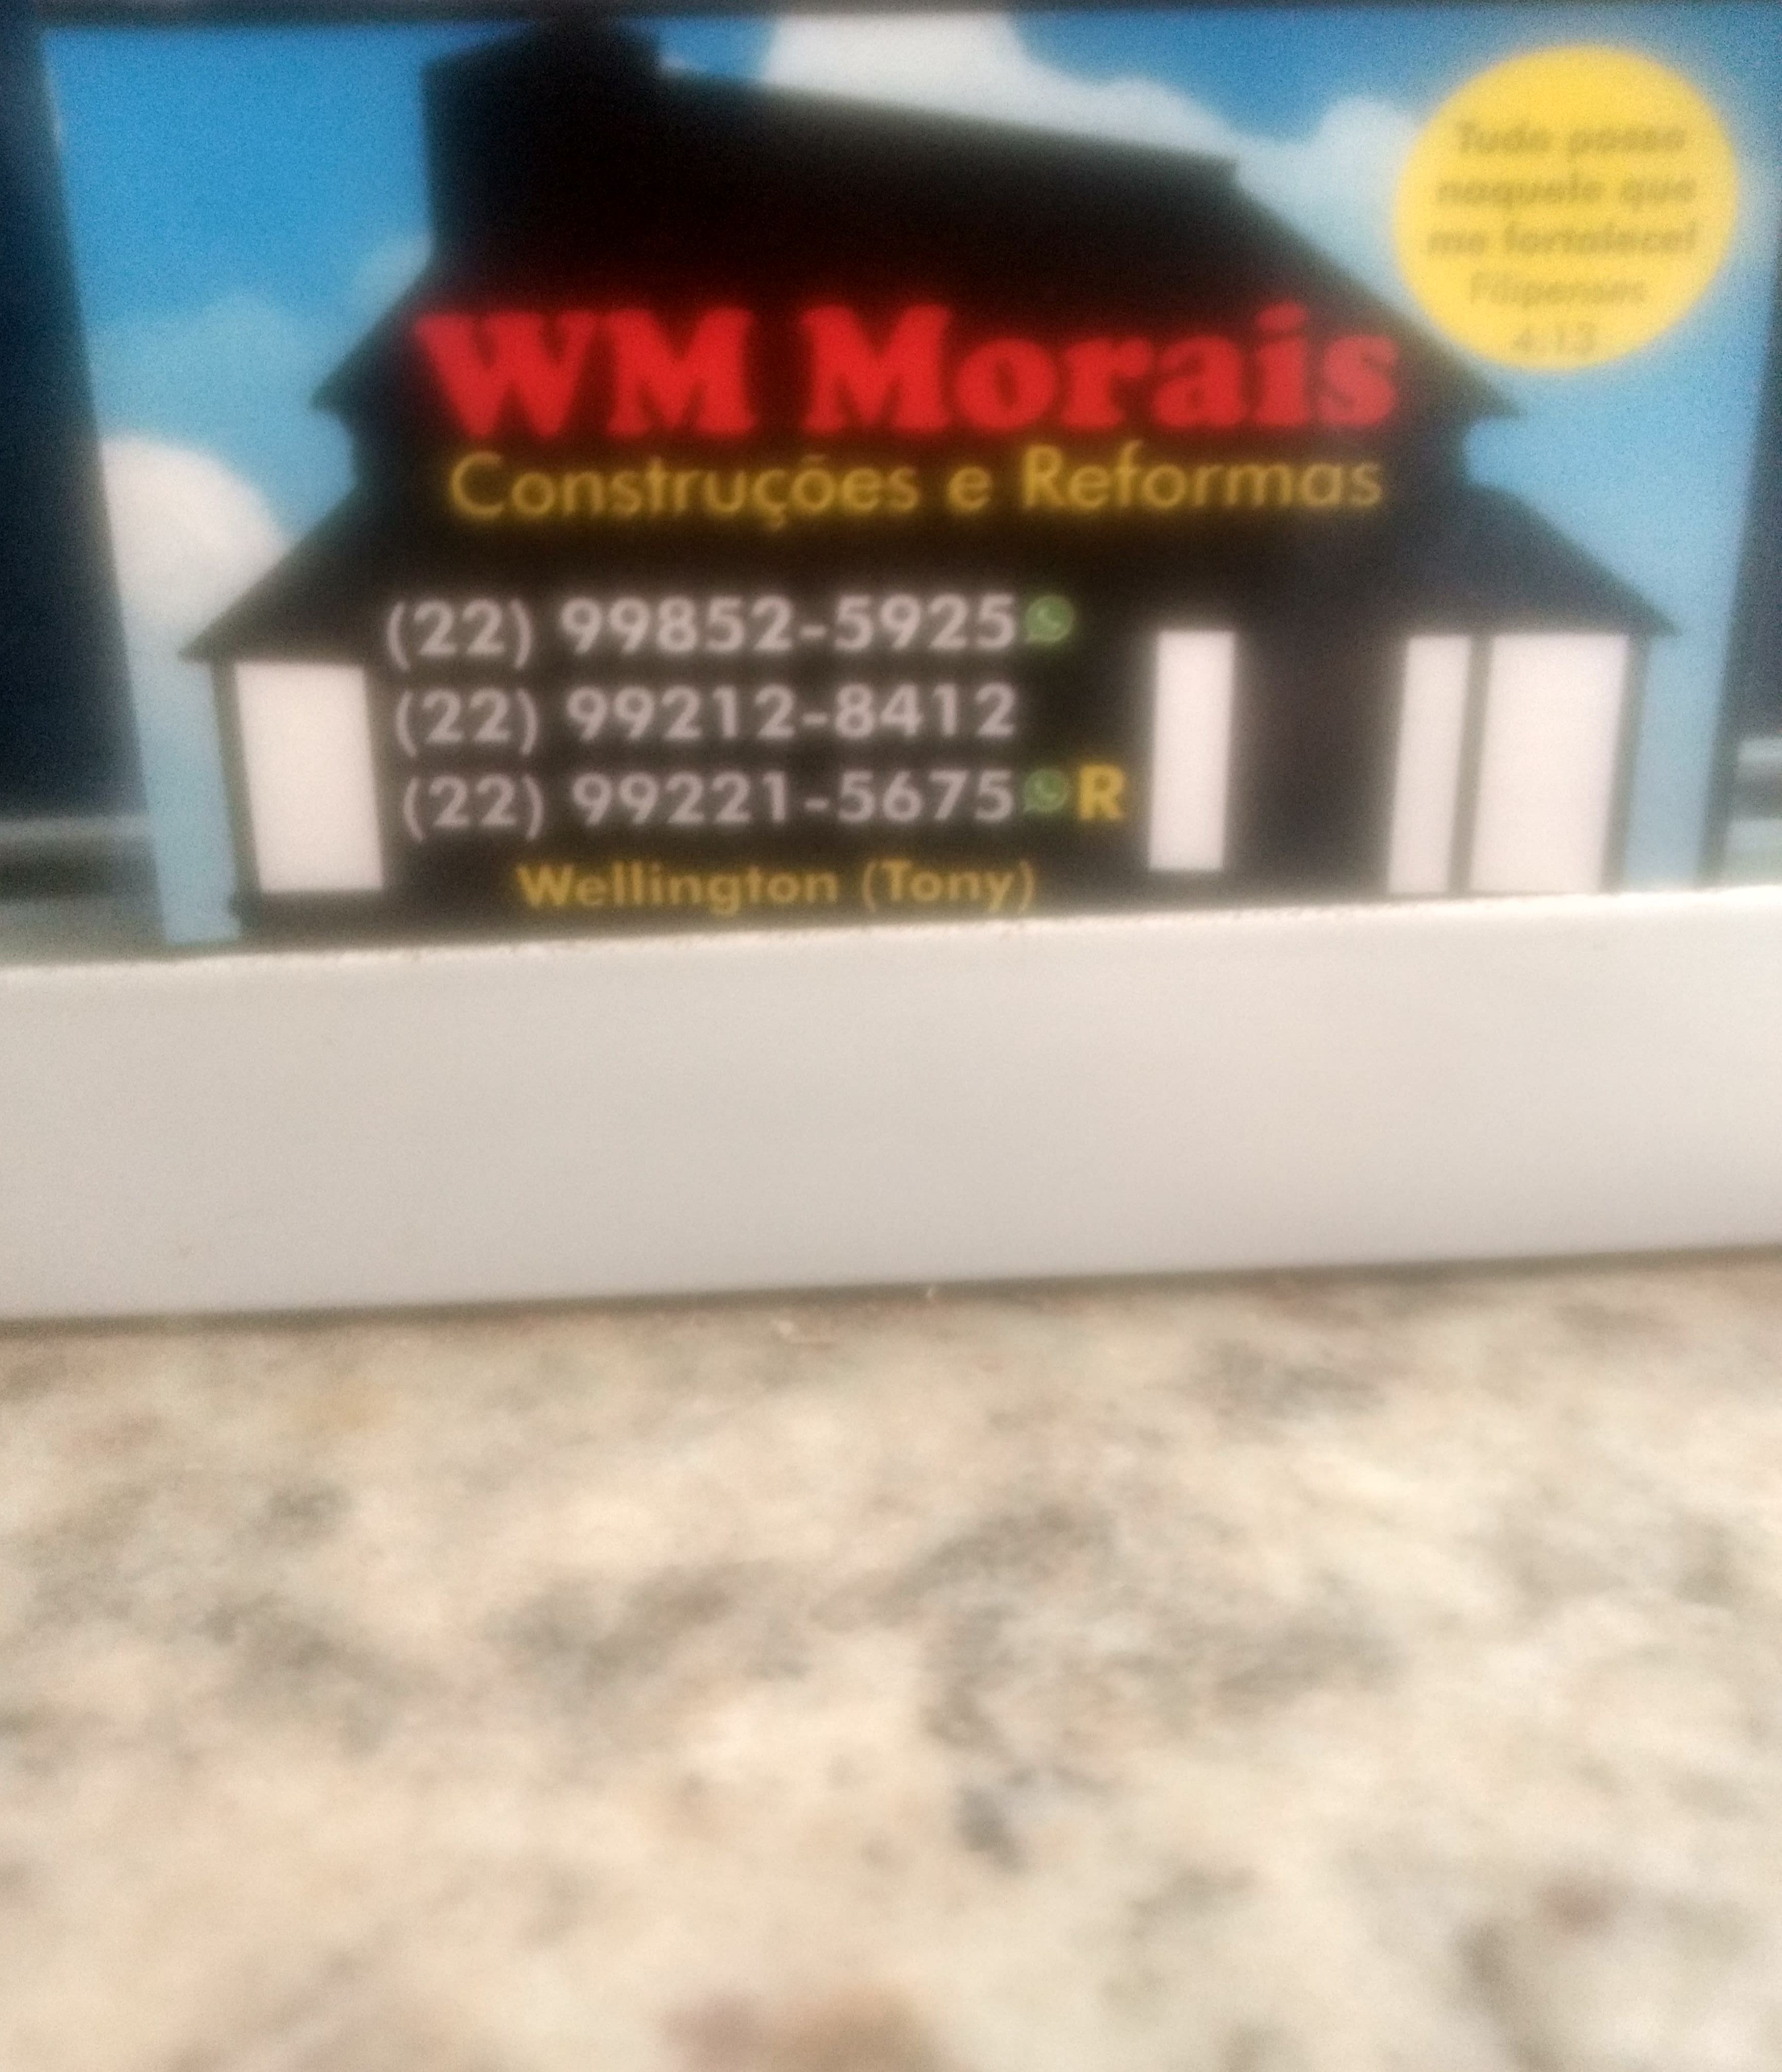 WM Morais Construções & Reformas